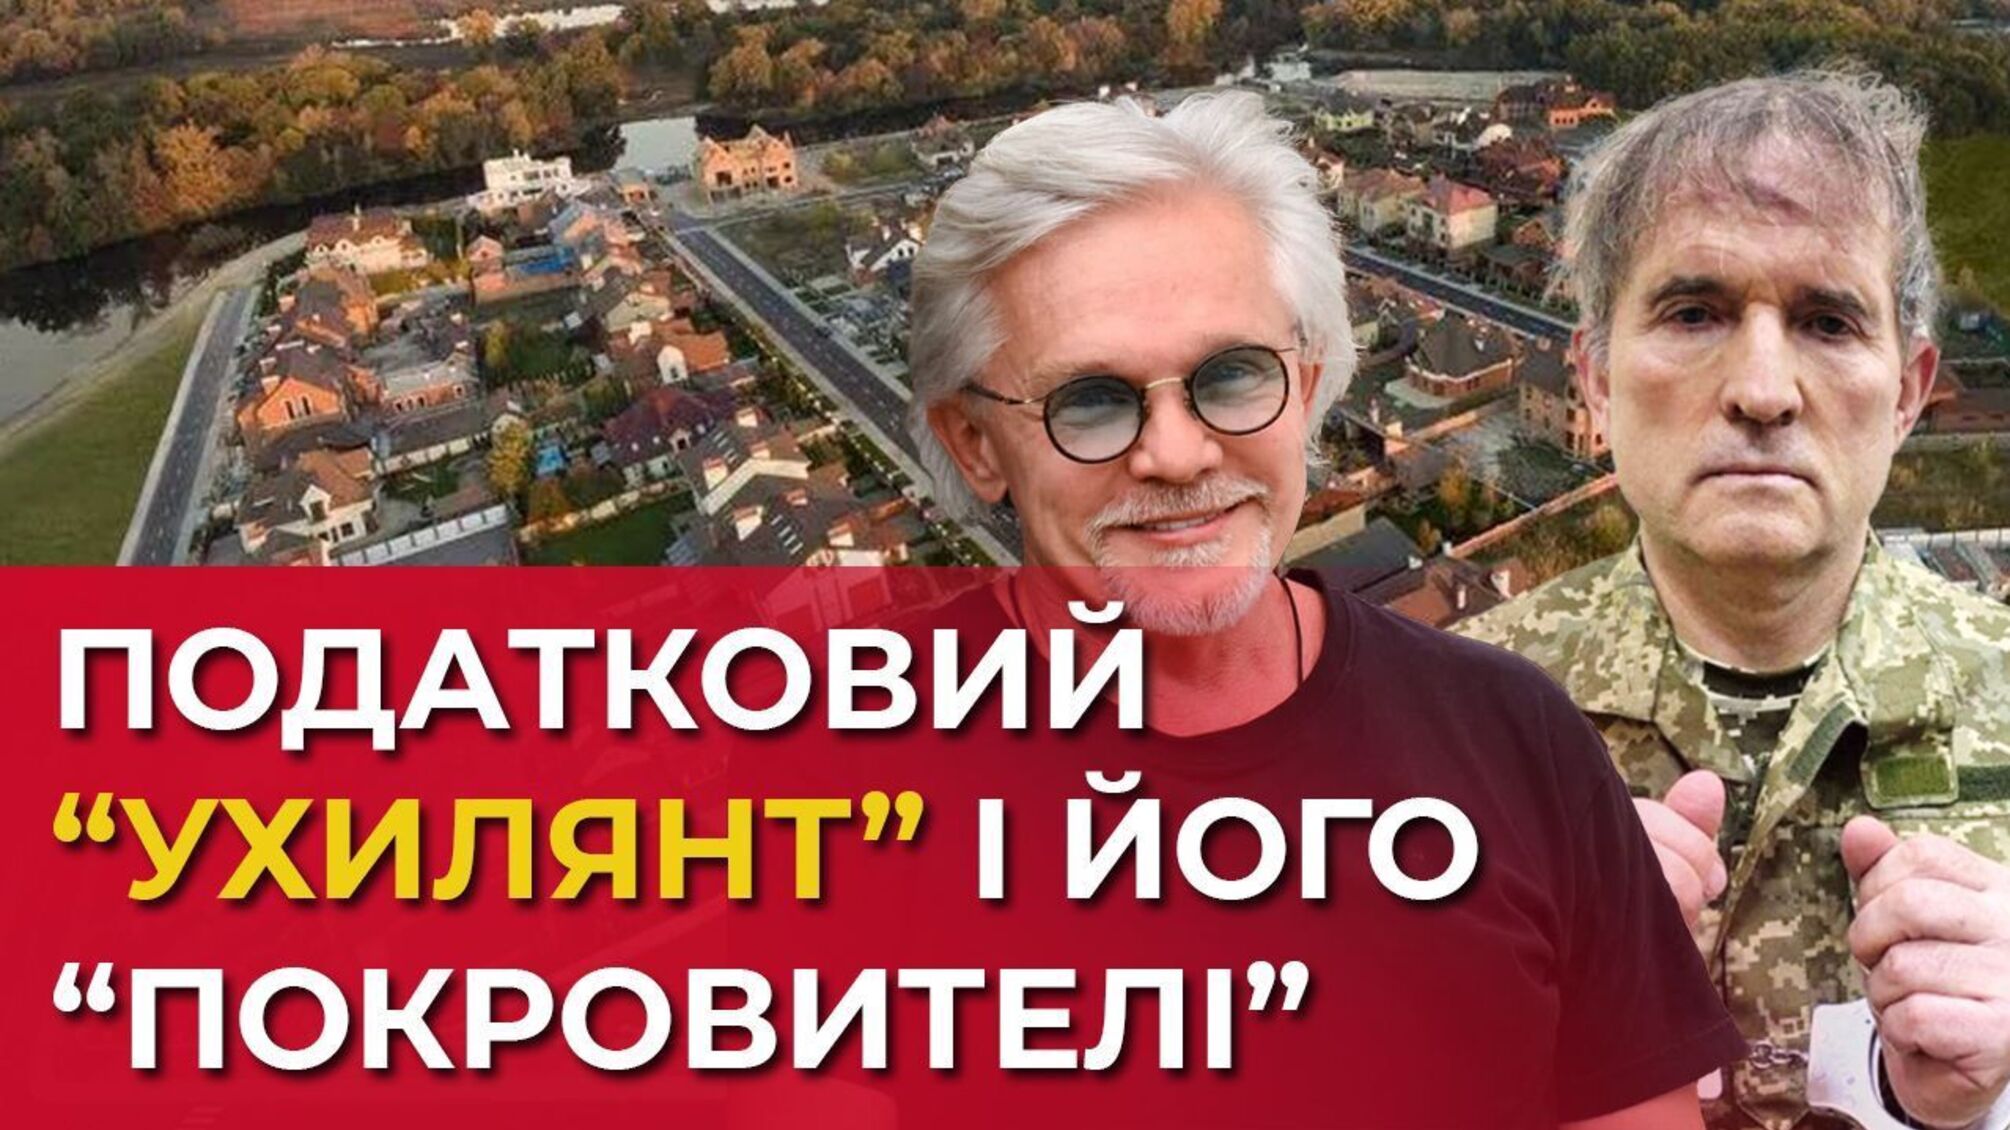 Експартнер Медведчука заробляє на елітній нерухомості під Києвом і веде бізнес в окупованому Криму?